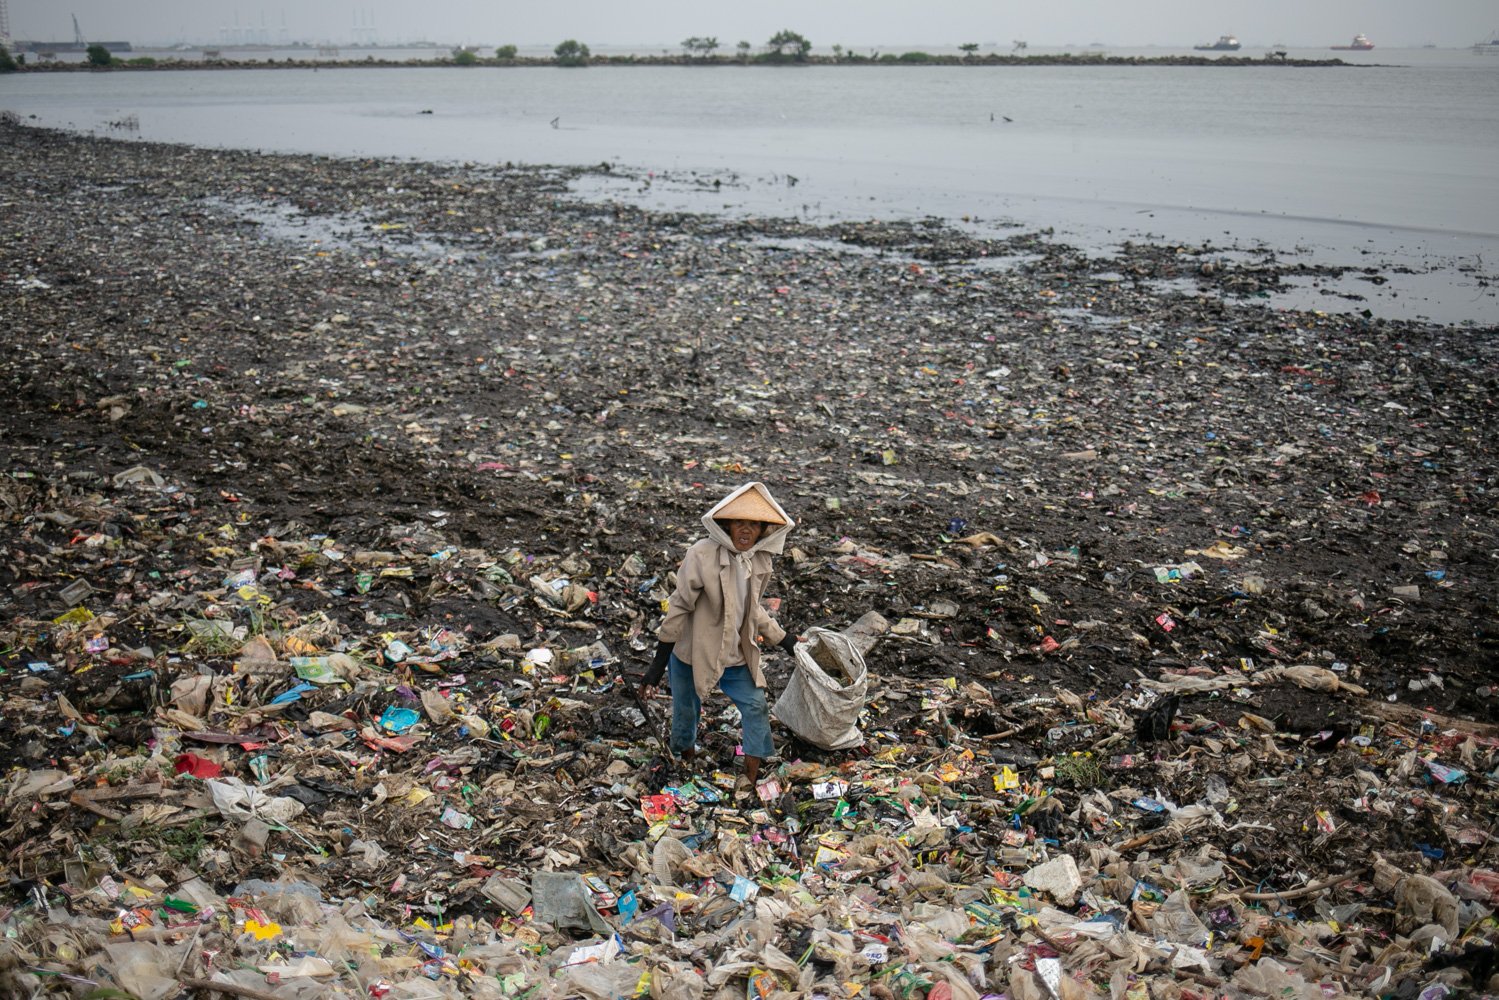 Warga memilah sampah plastik di atas tumpukan sampah di sekitar Pantai Marunda, Cilincing, Jakarta, Kamis (8/6).Dalam peringatan Hari Laut Internasional kondisi laut Jakarta masih dipenuhi sampah. Menurut KLHK Indonesia menghasilkan lebih dari 19 juta ton sampah sepanjang 2022, 18 persennya sampah plastik yang sebagian ngalir ke laut.